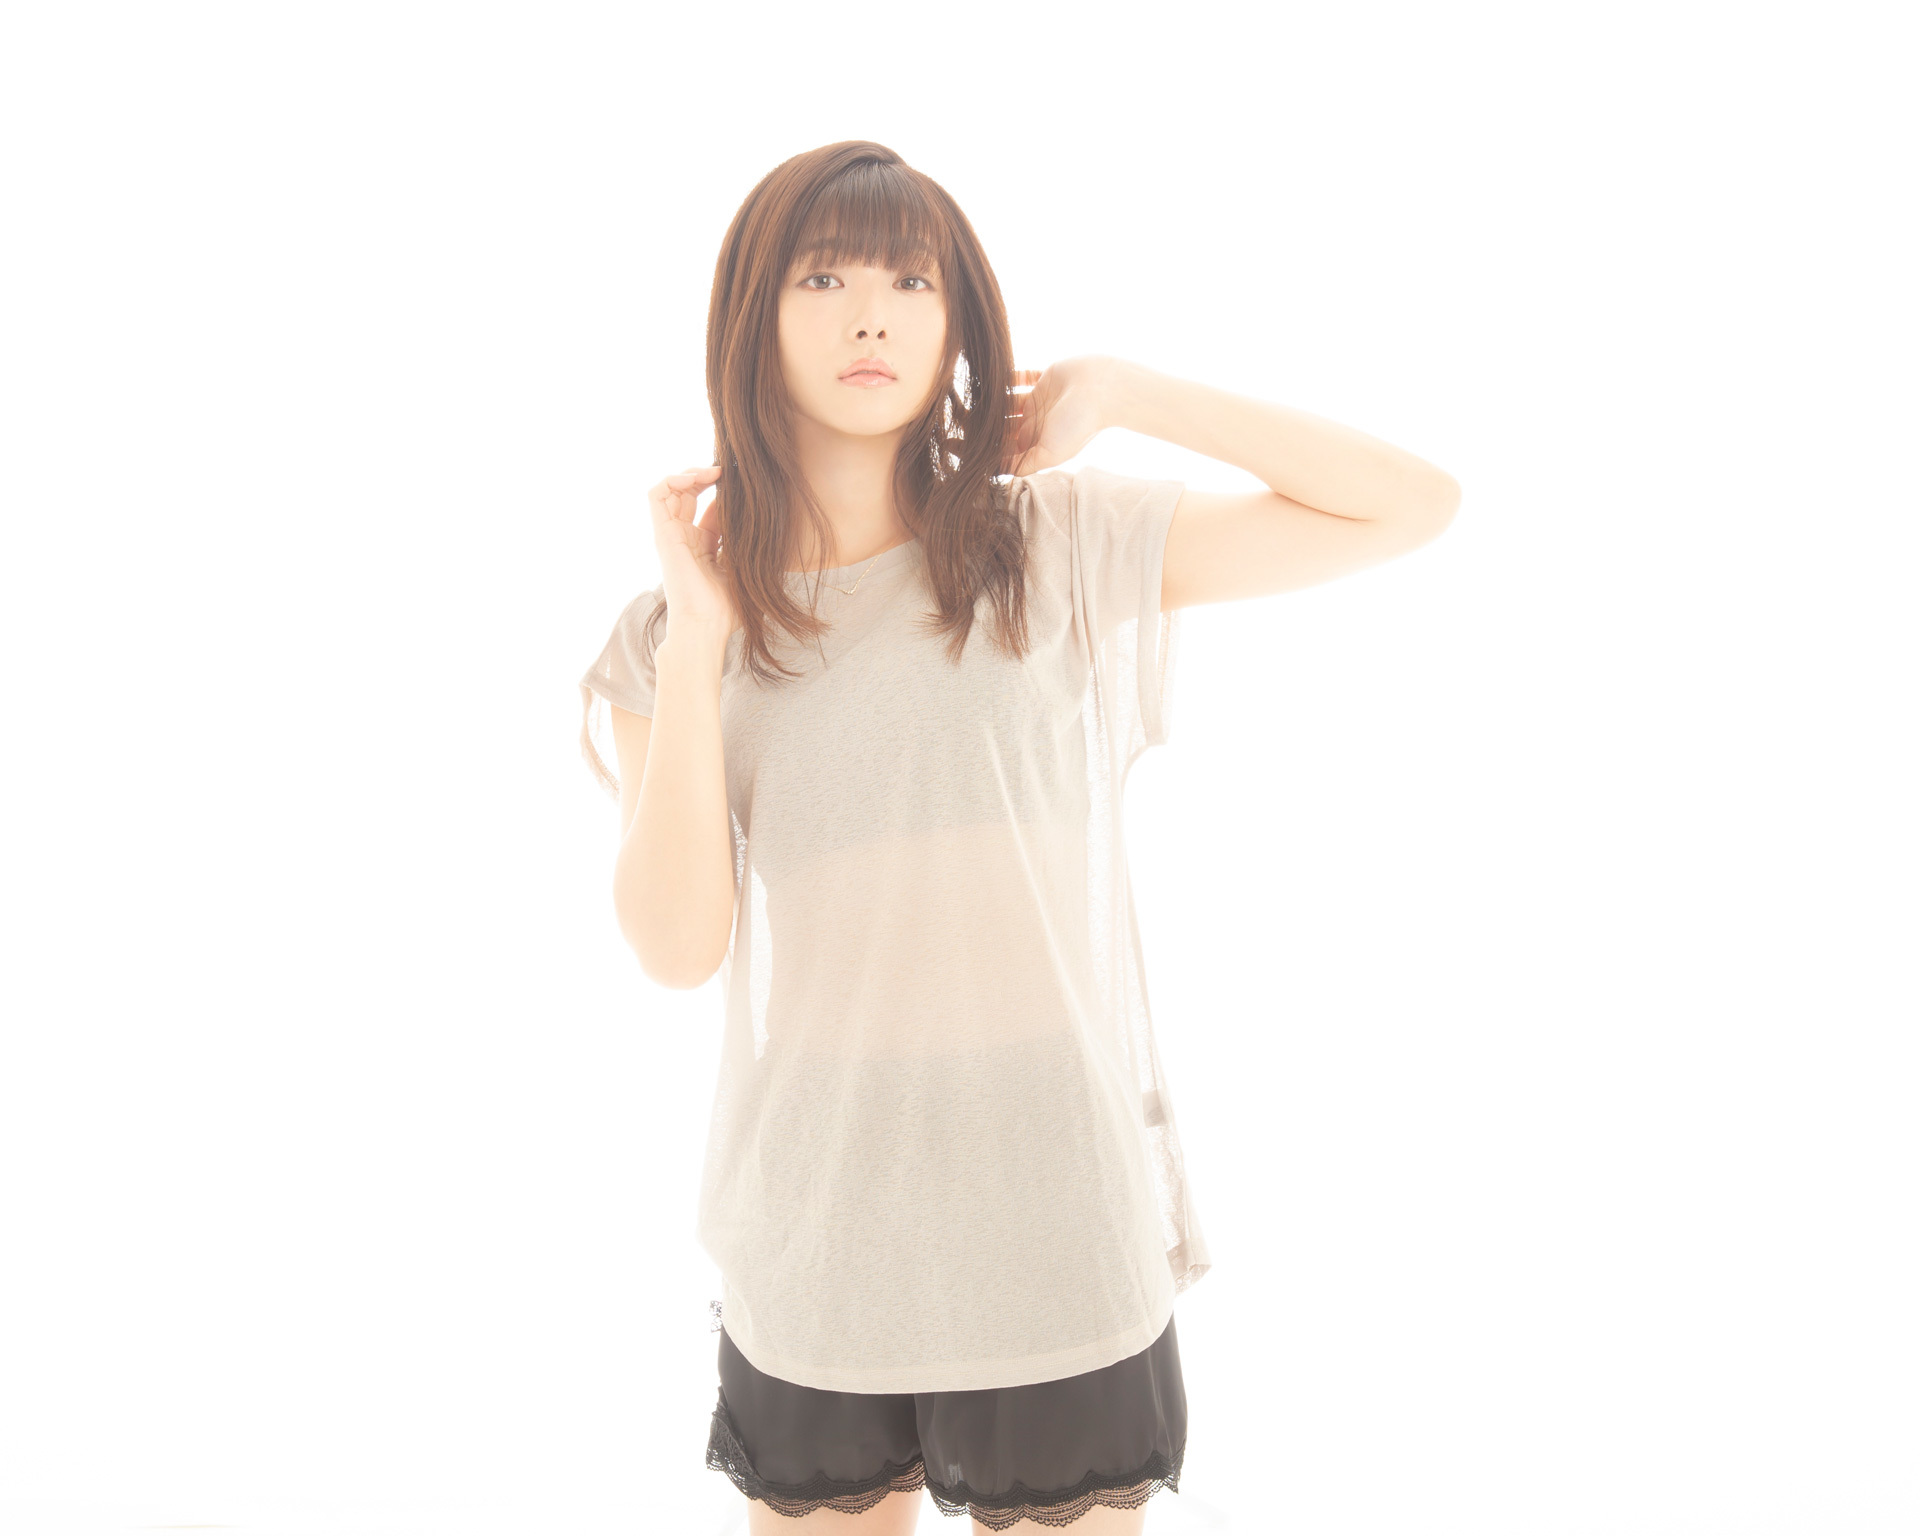 インタビュー 私 を構成する11曲です 沼倉愛美が2ndアルバム アイ をリリース アキバ総研